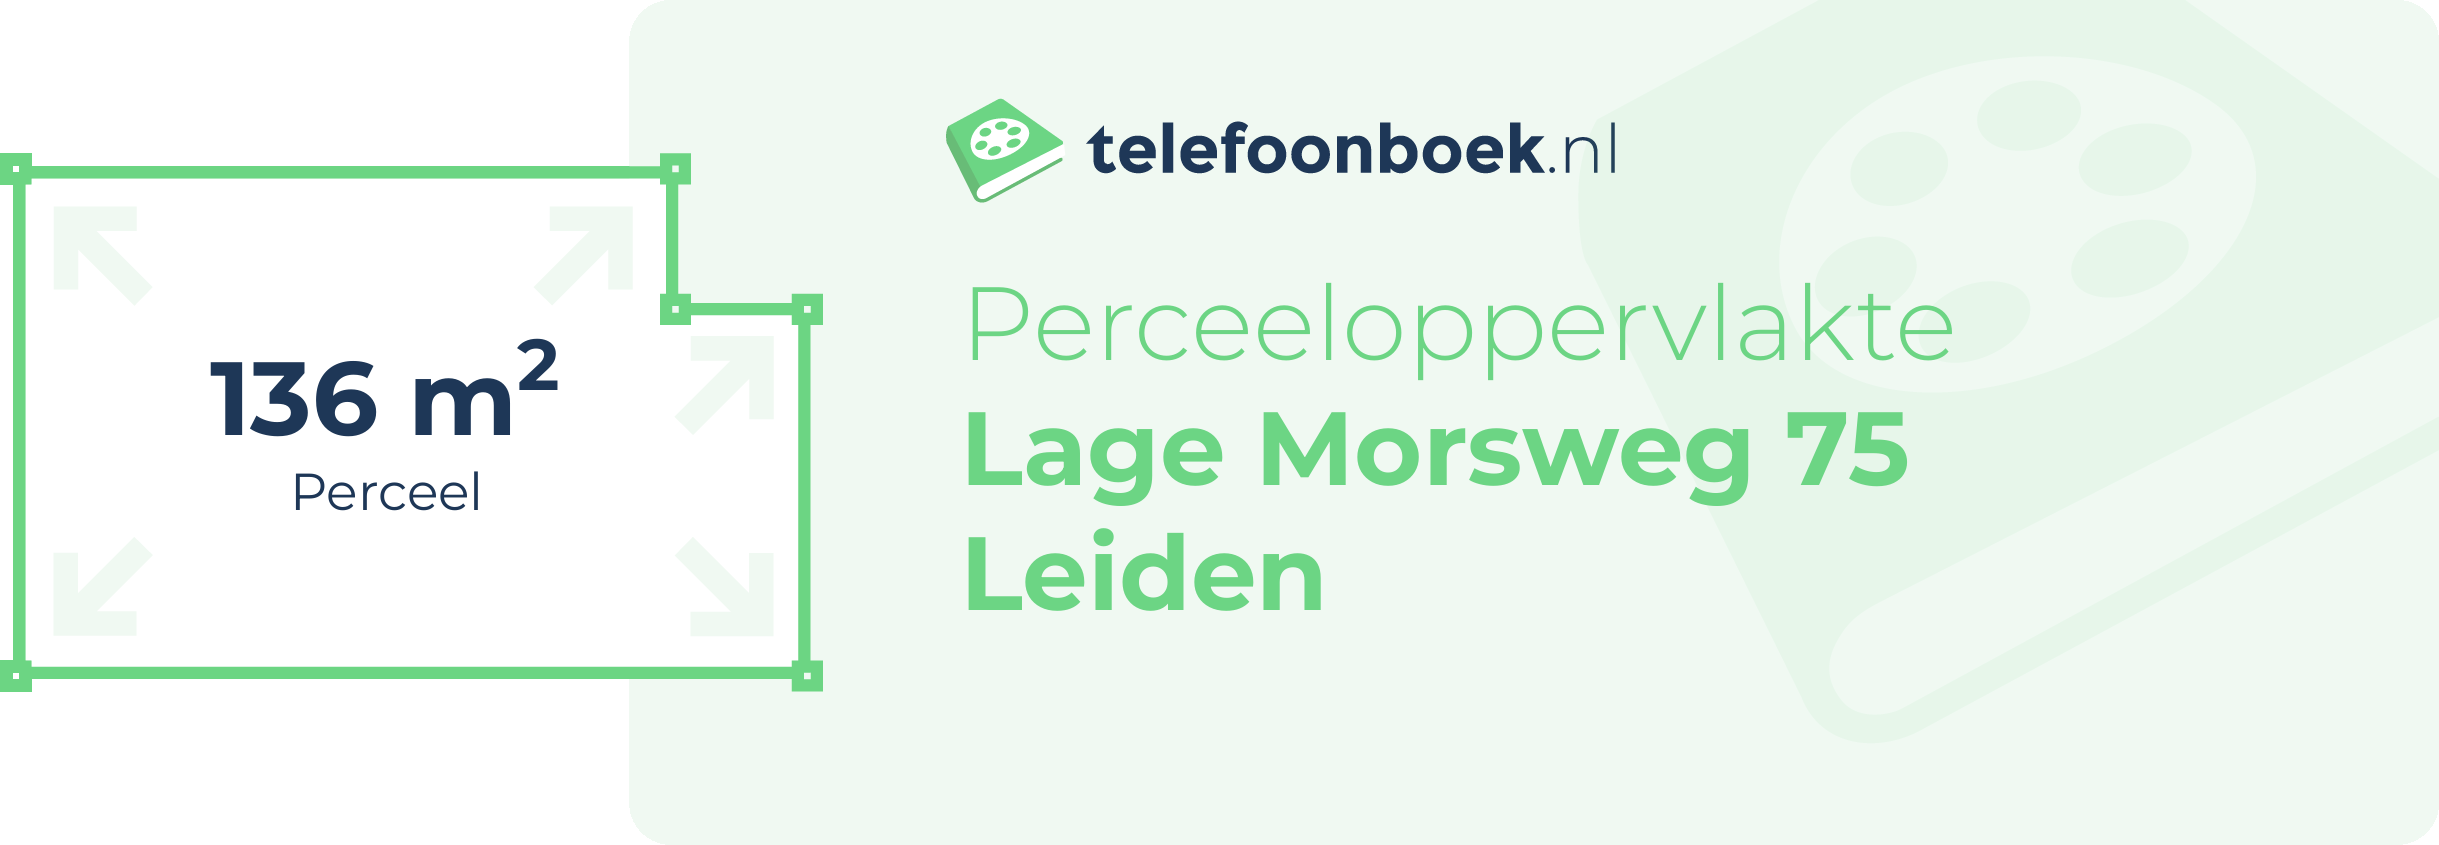 Perceeloppervlakte Lage Morsweg 75 Leiden